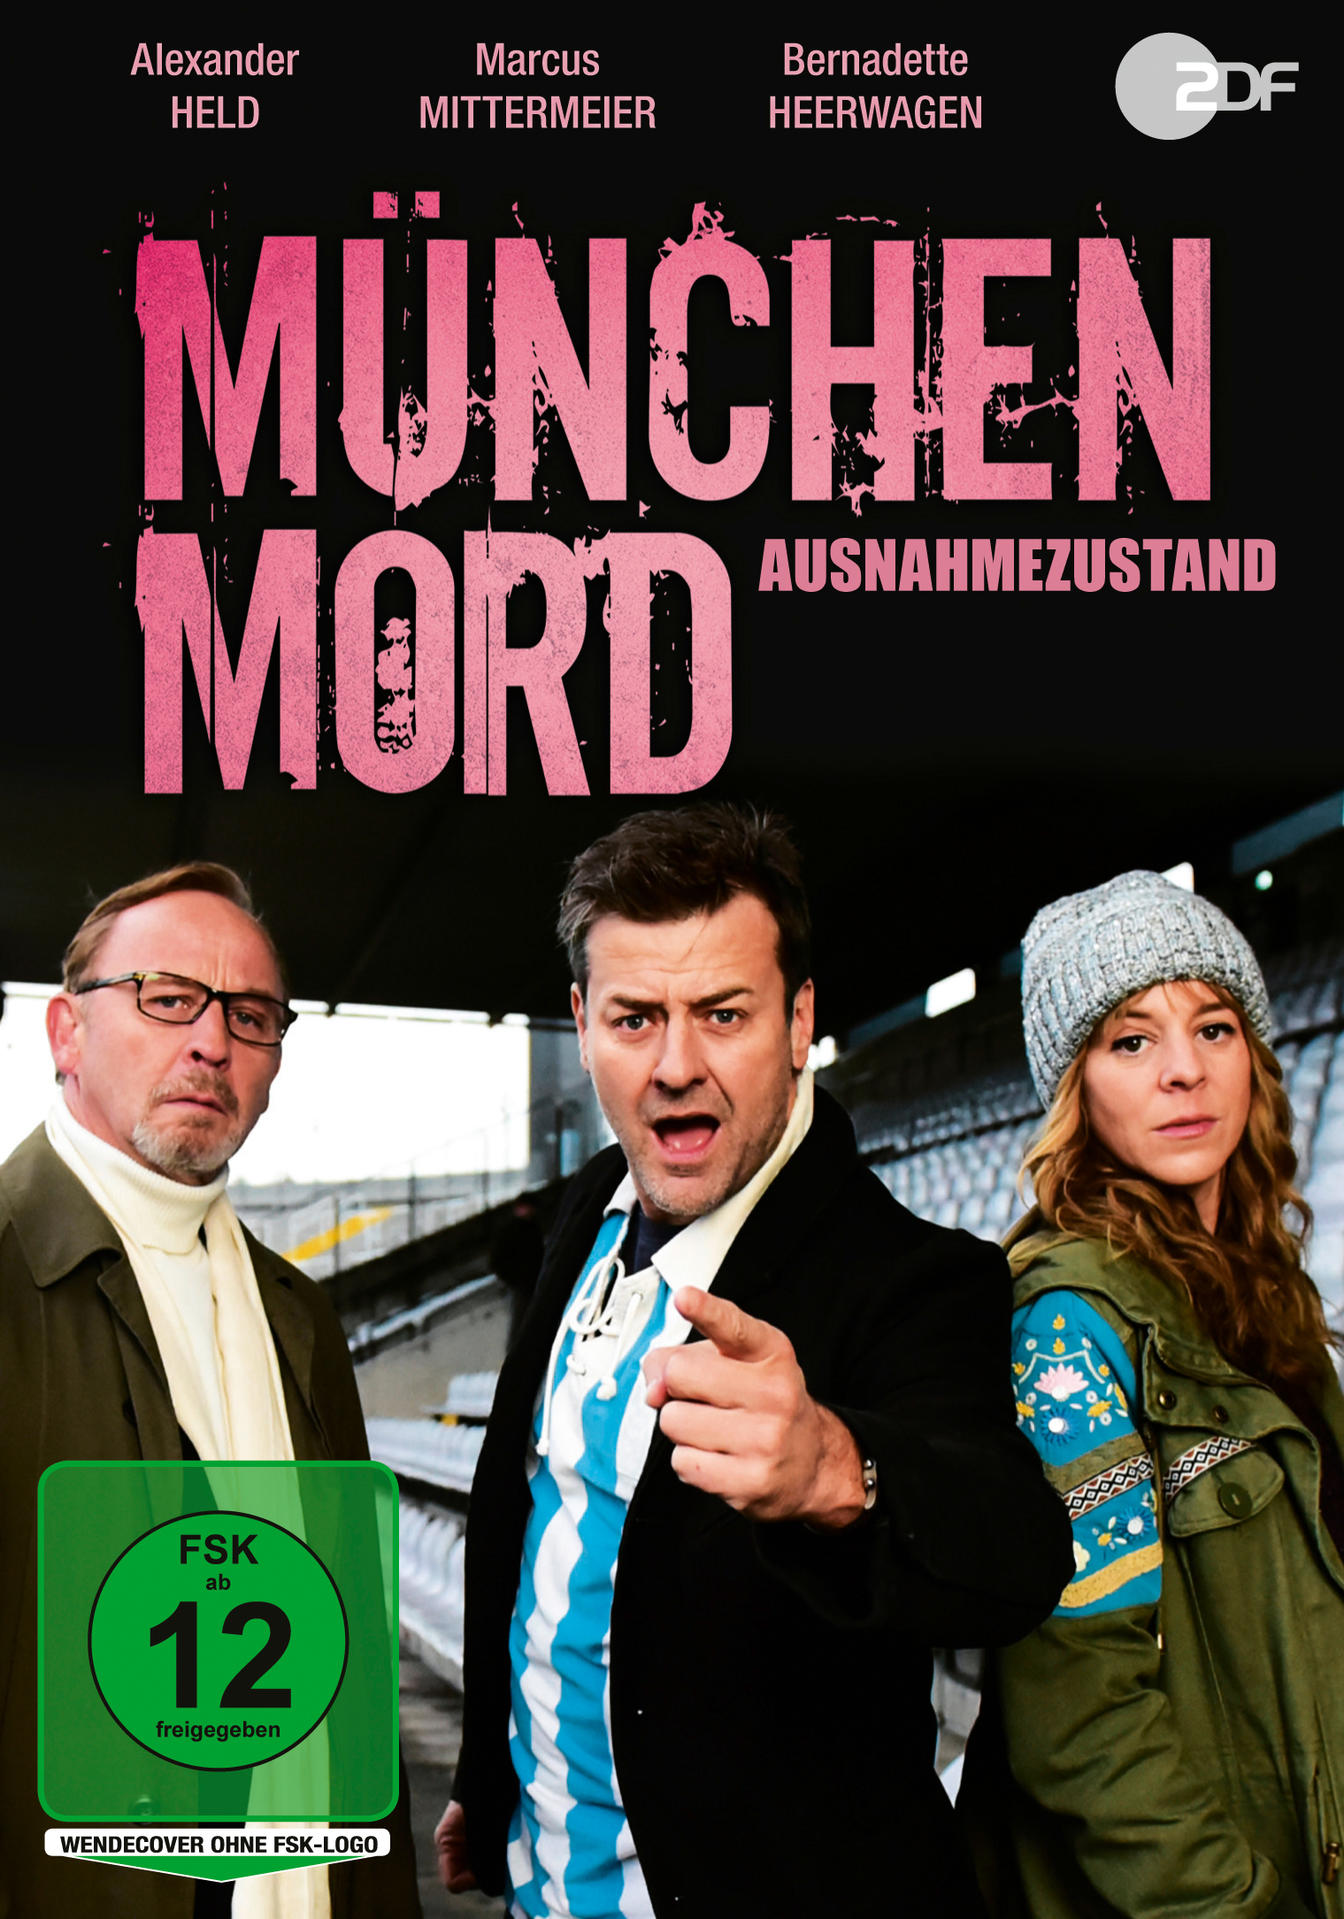 München Mord - Ausnahmezustand DVD